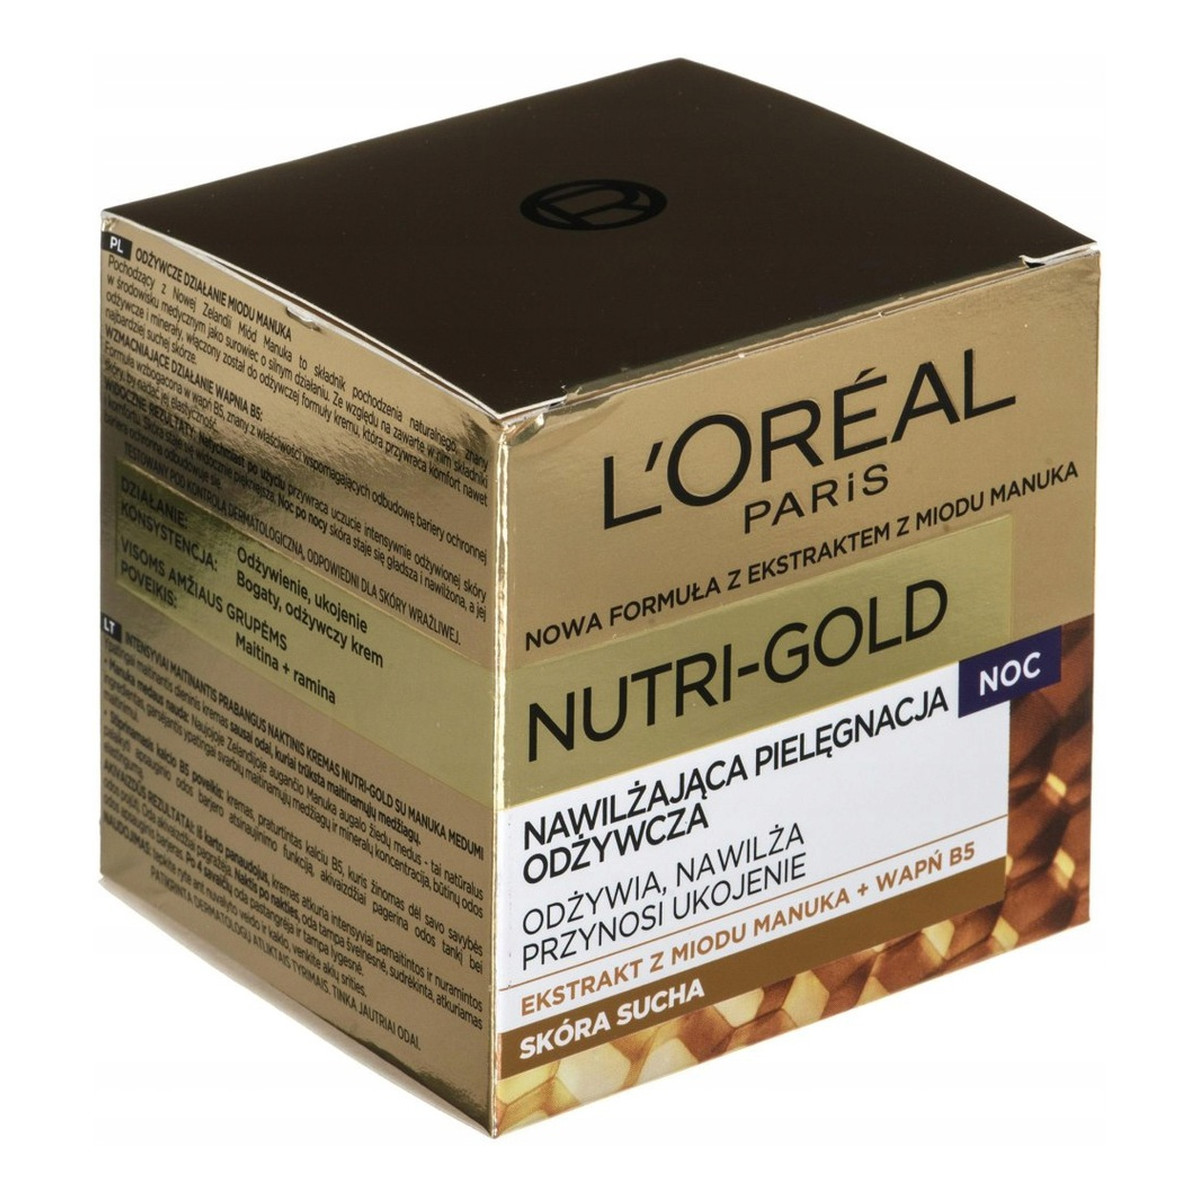 L'Oreal Paris Nutri-Gold Nawilżająca Terapia Odżywcza Na Noc Krem Odżywczy 50ml